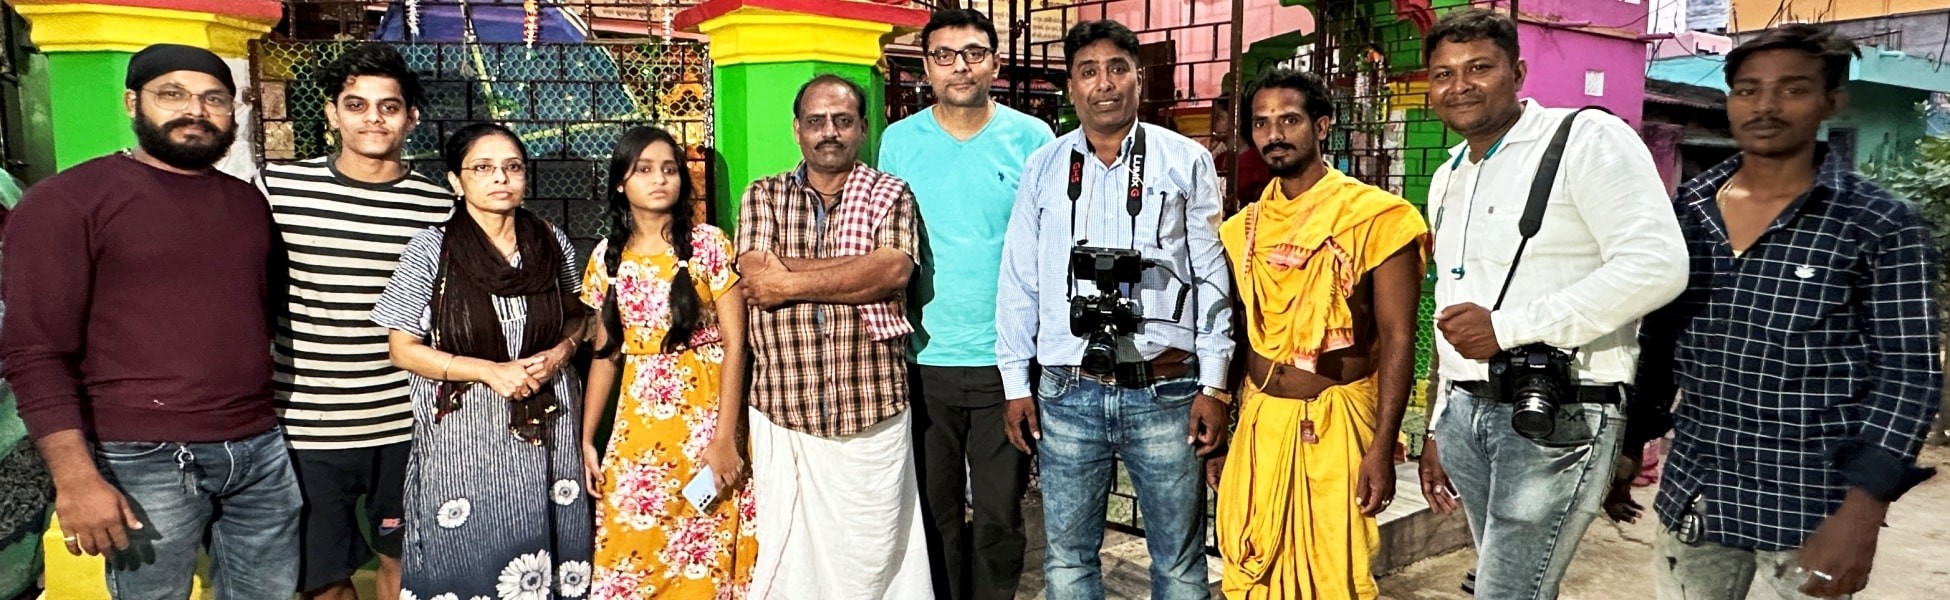 film shooting locations in Yadgir, video shooting locations in Yadgir, tv shooting locations in Yadgir, shooting locations in Yadgir